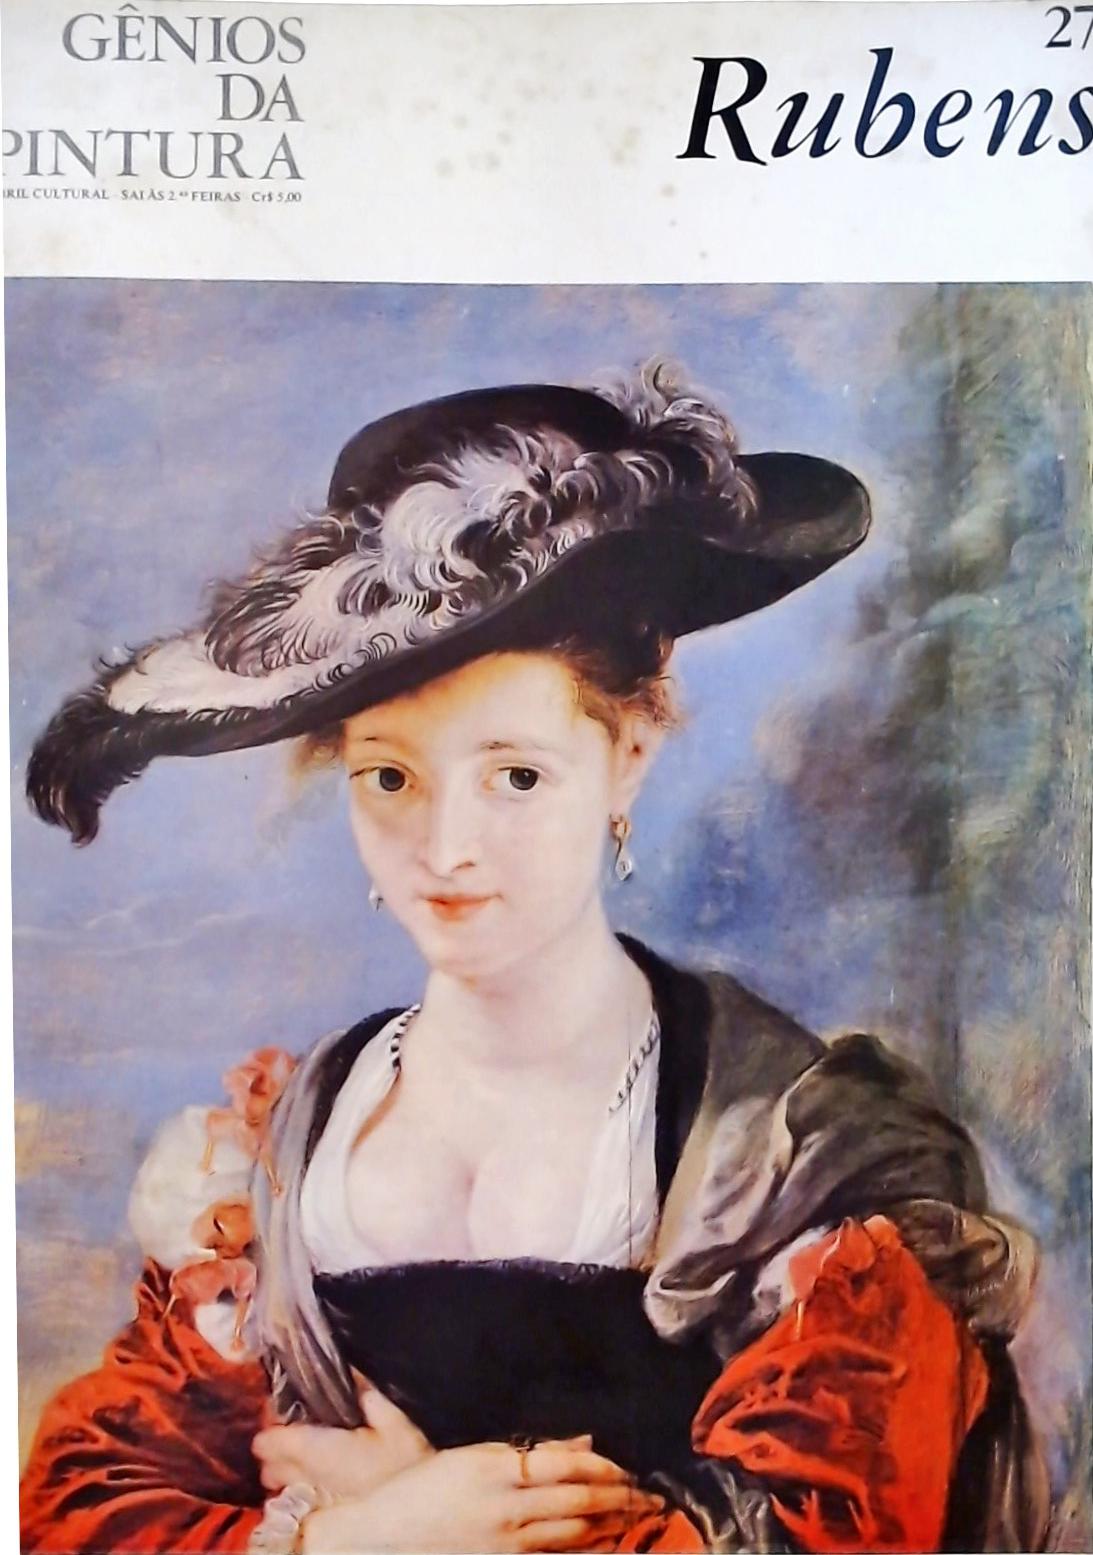 Gênios da Pintura - Rubens